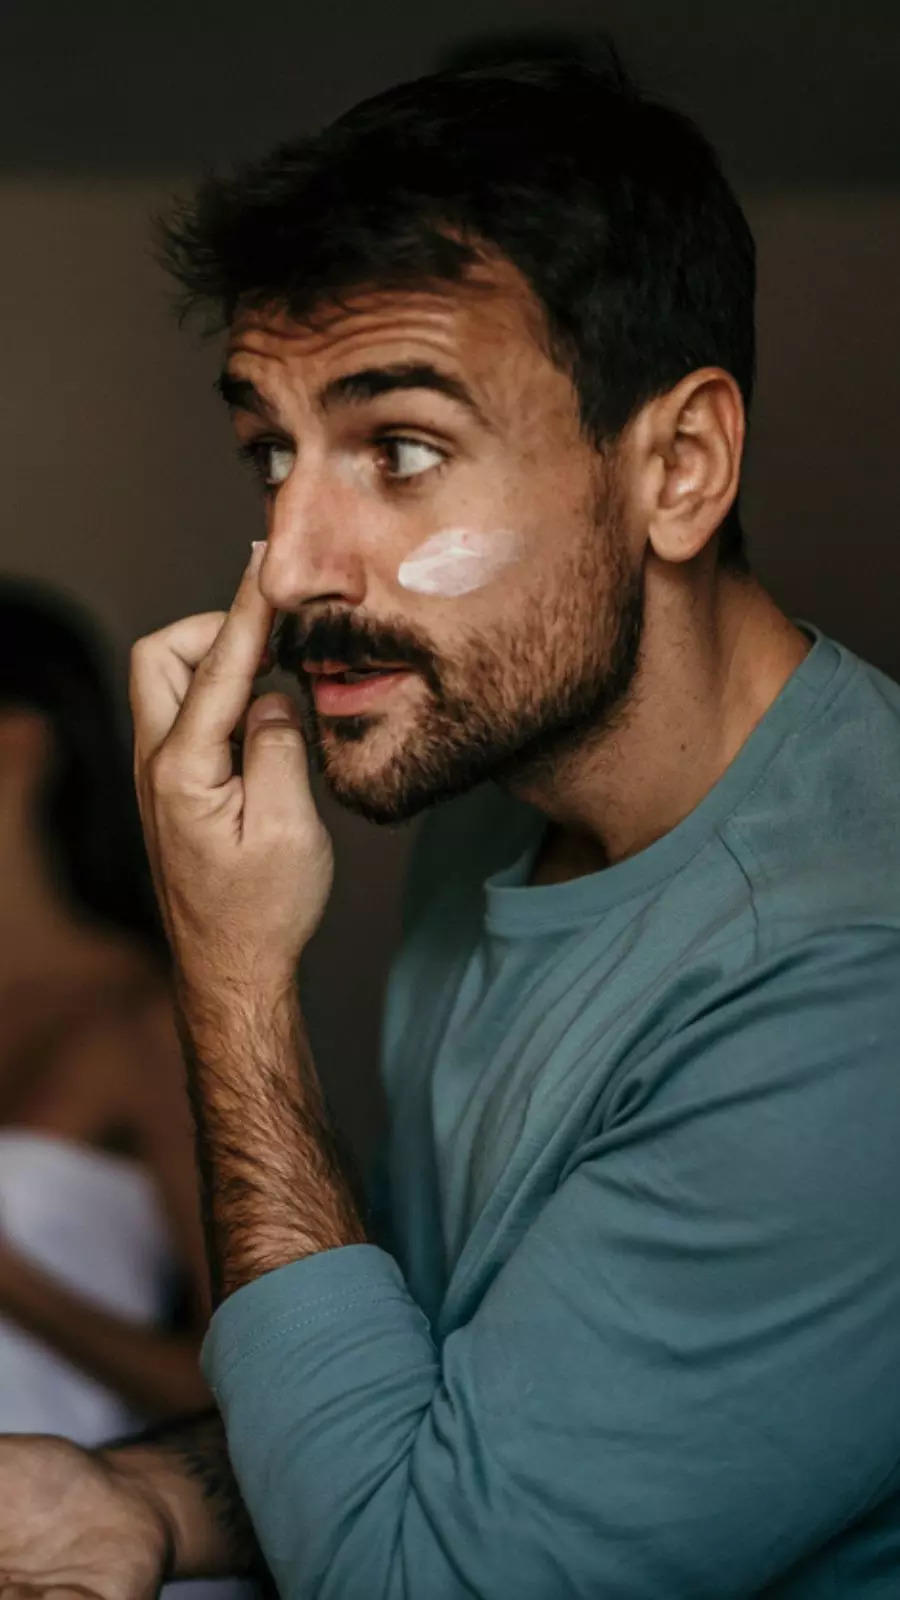 Summer skincare hacks for men to maintain hygiene